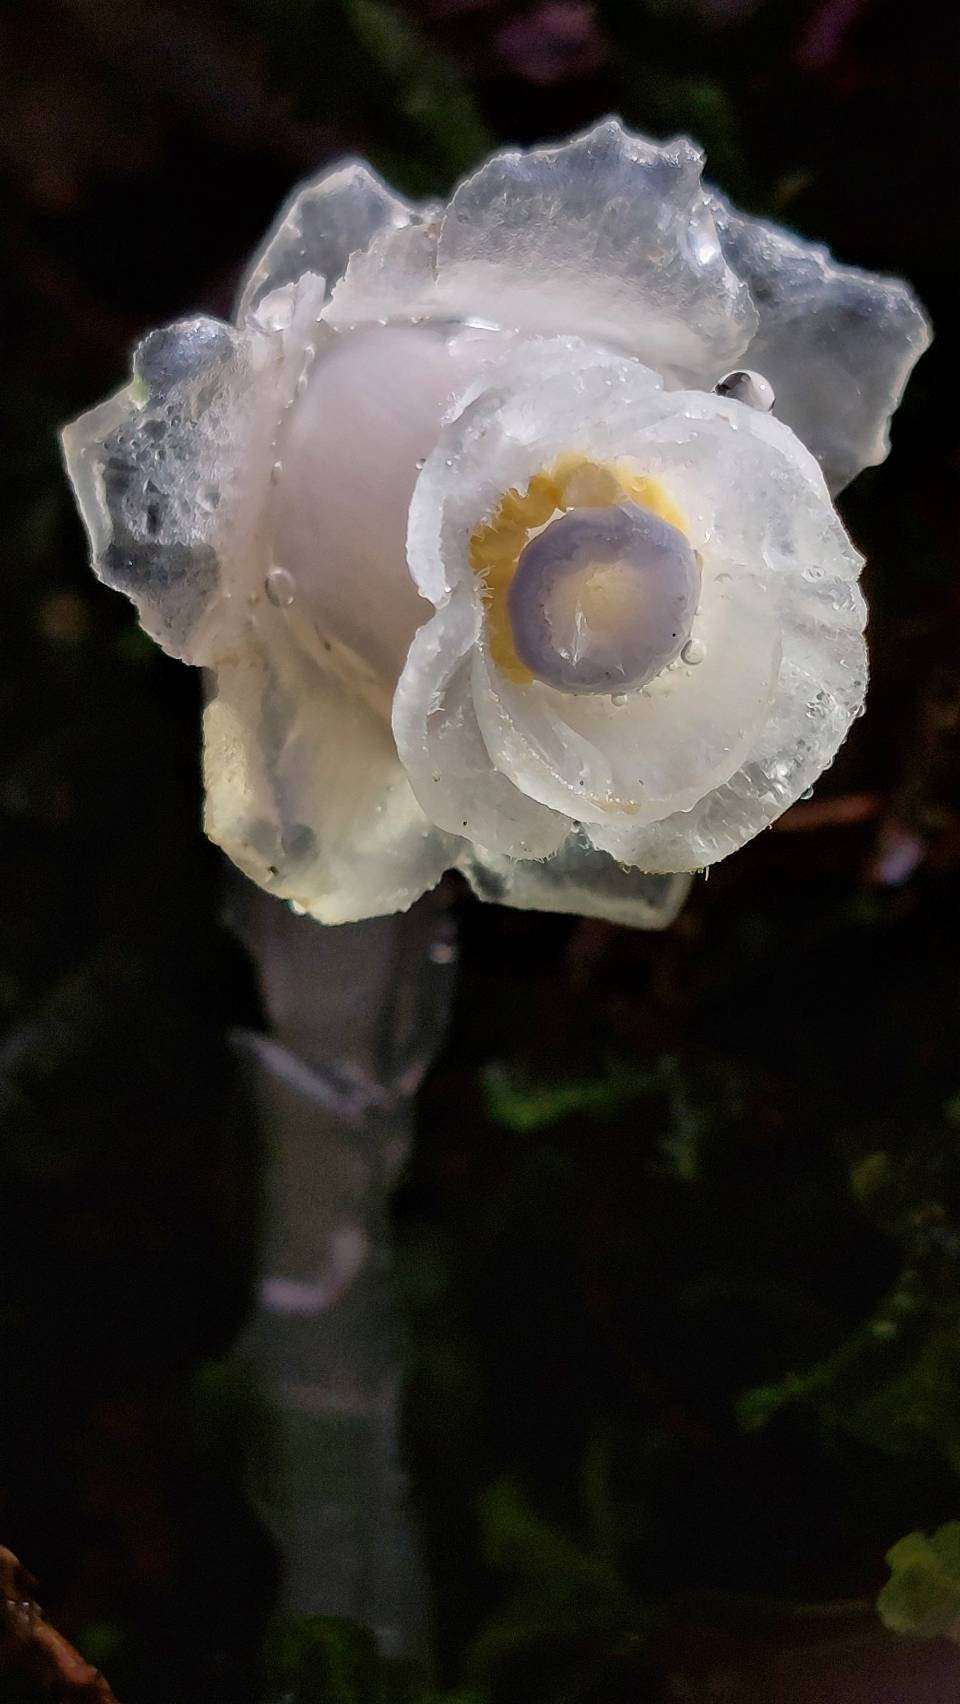 晶瑩剔透的「阿里山水晶蘭」